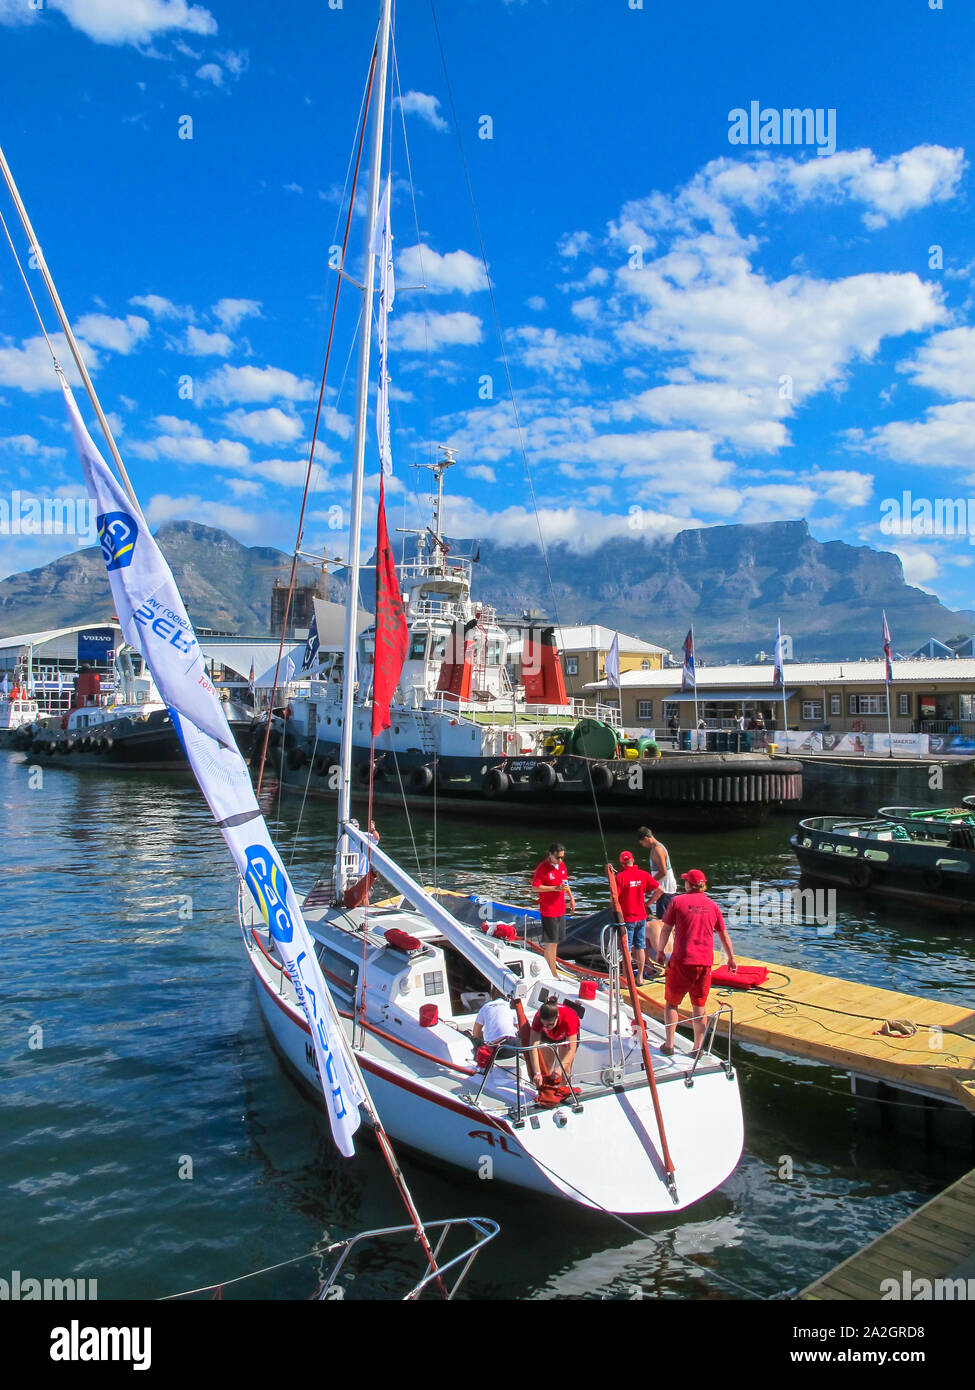 Yate amarrado en Table Bay Harbour con personas vestidas con ropa de color rojo y en el fondo la Table Mountain, Ciudad del Cabo, Sudáfrica Foto de stock